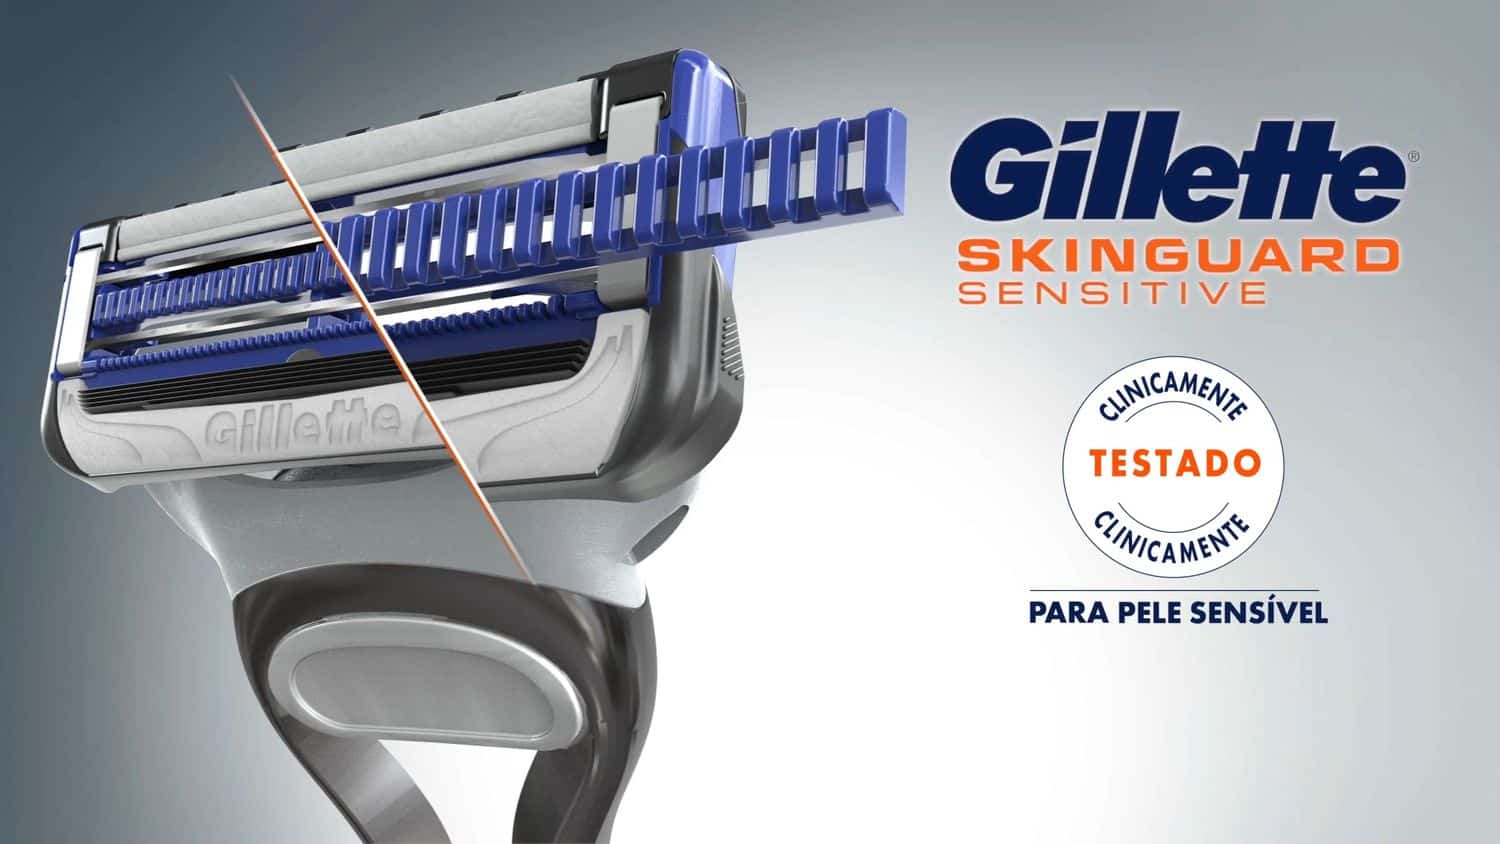 Imagem mostra o aparelho de barbear Gillette Skinguard